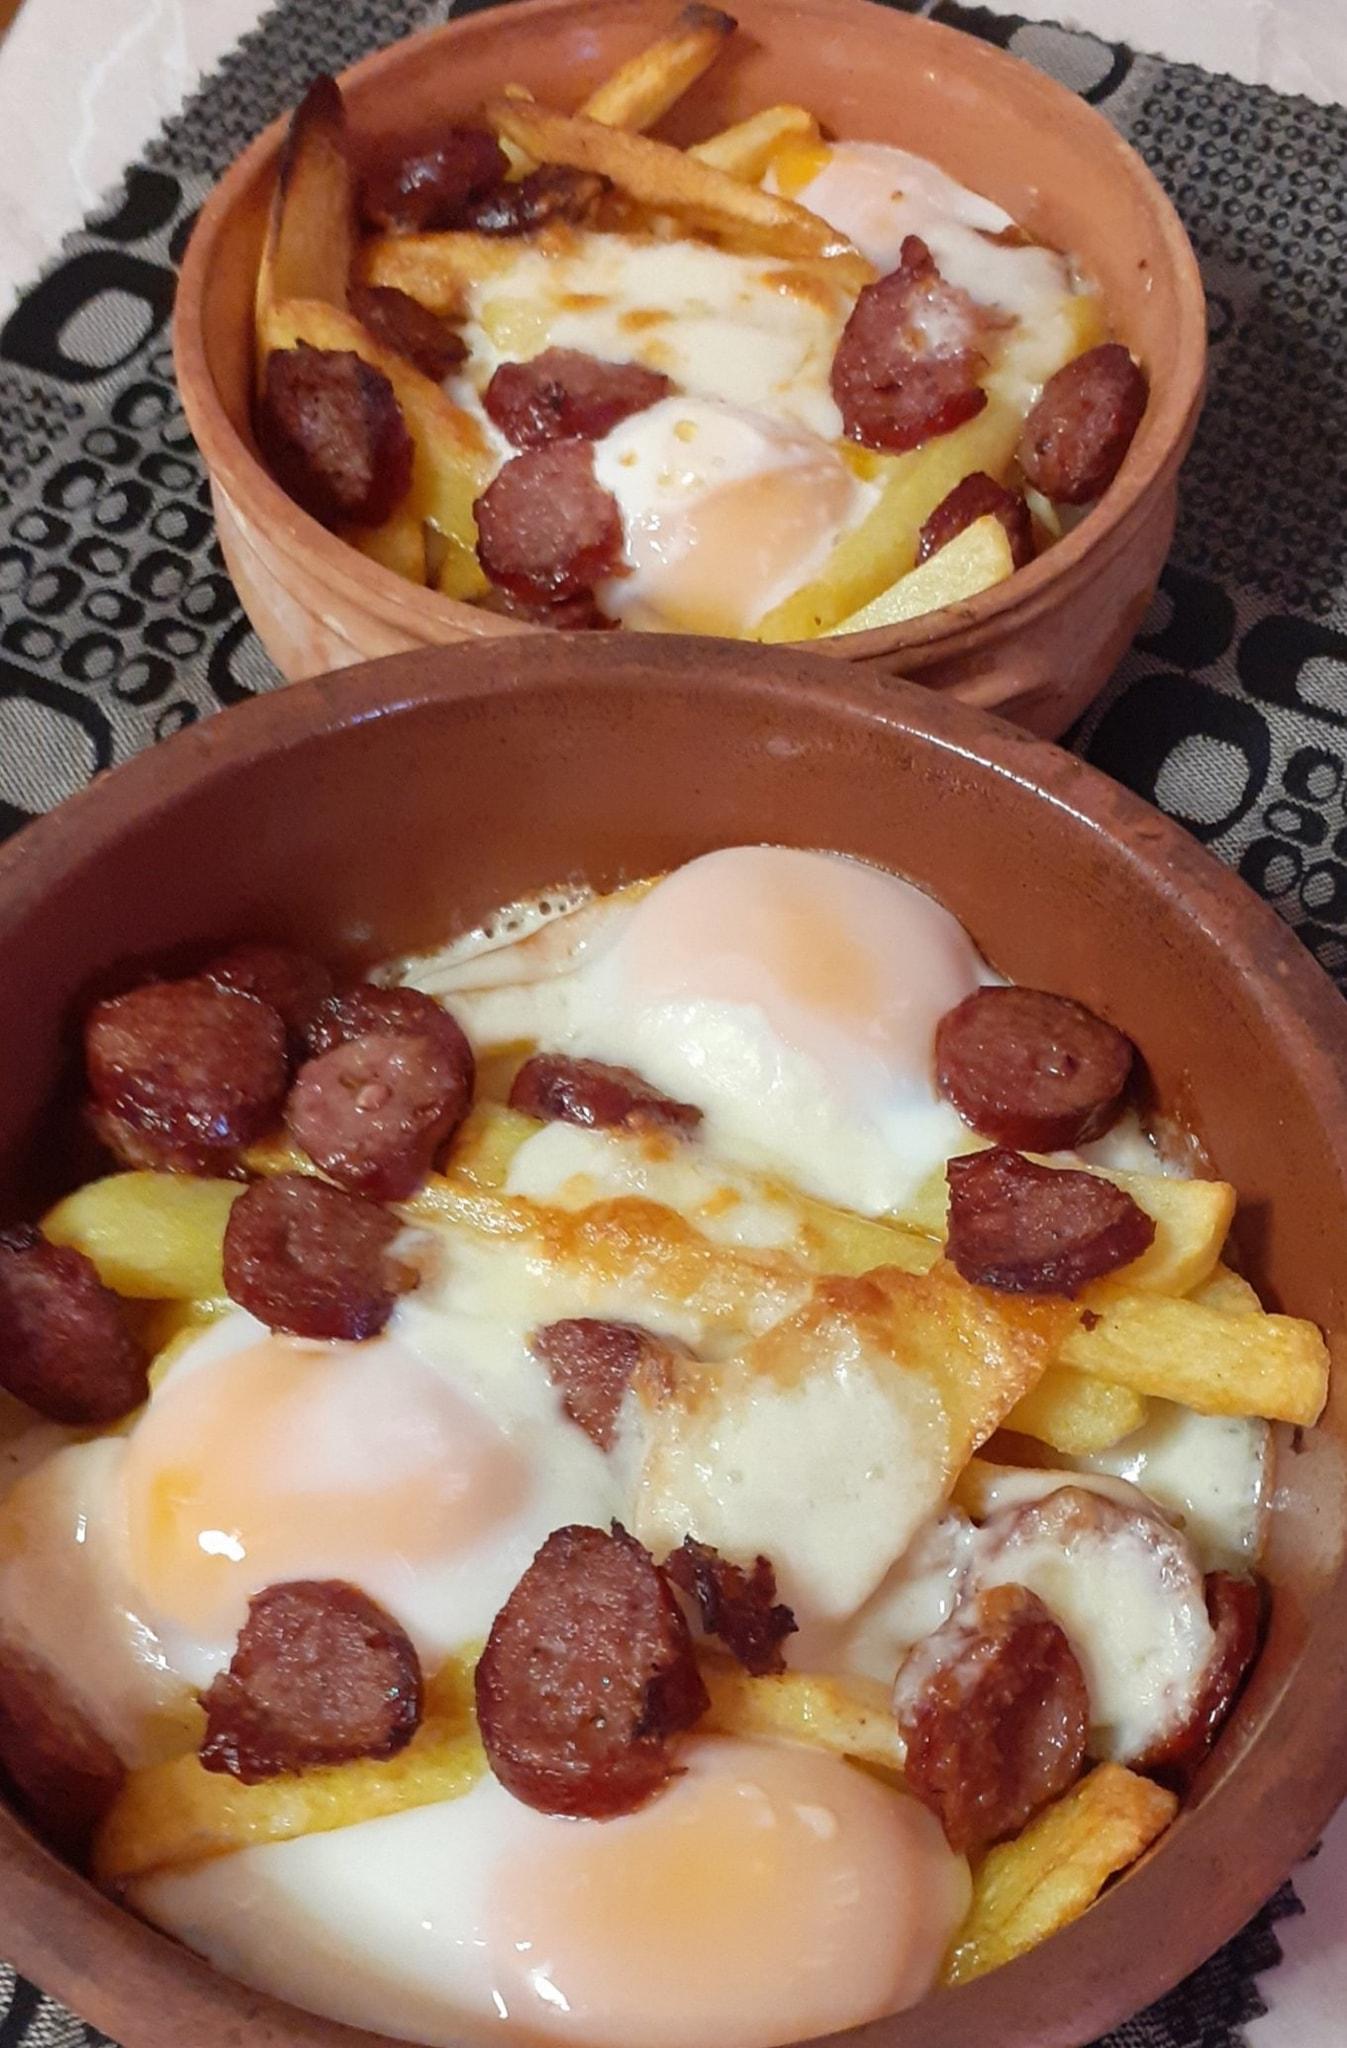 Το φαγητό της πολυάσχολης: Πατάτες με αυγά και λουκάνικα στο πήλινο